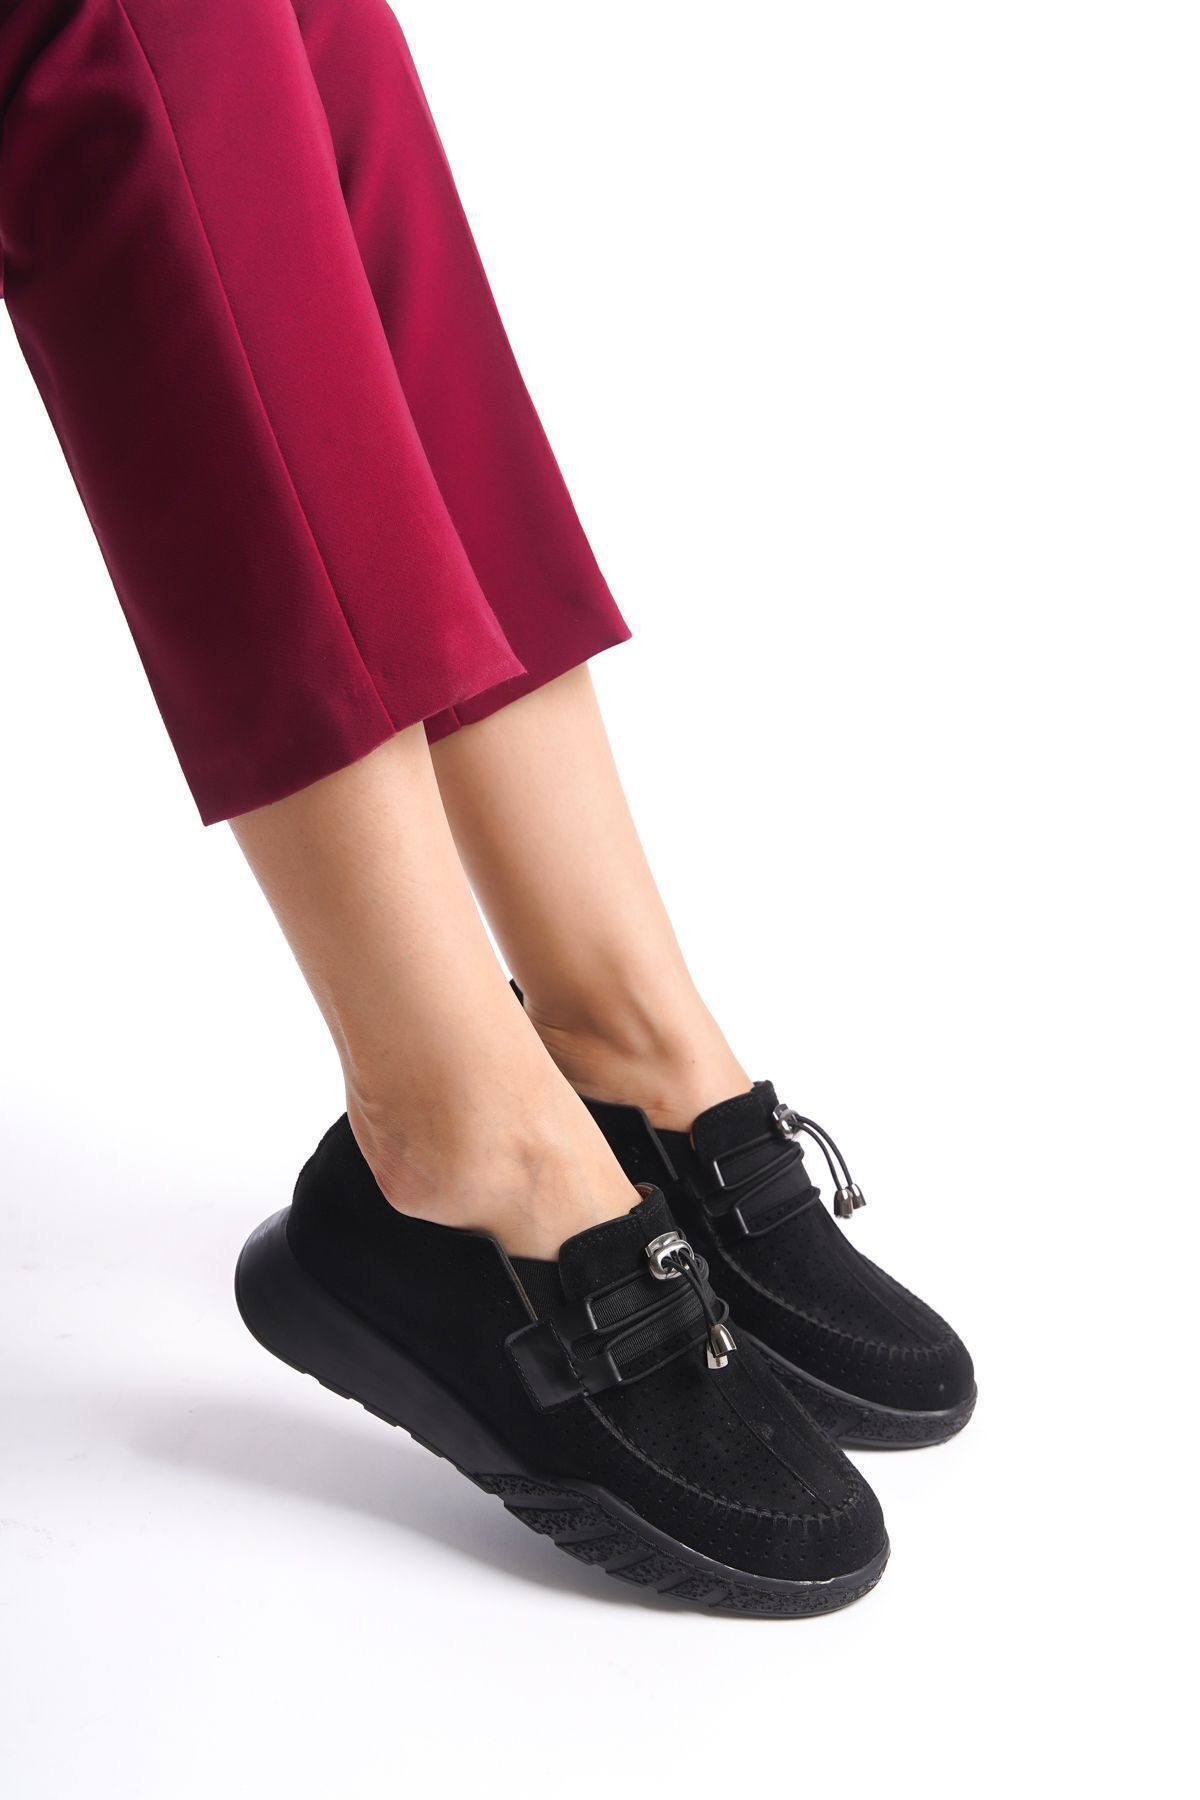 Limeo Siyah Süet Delikli Bağcık Detaylı Orta Yüksek Taban Günlük Kadın Casual Spor Ayakkabı